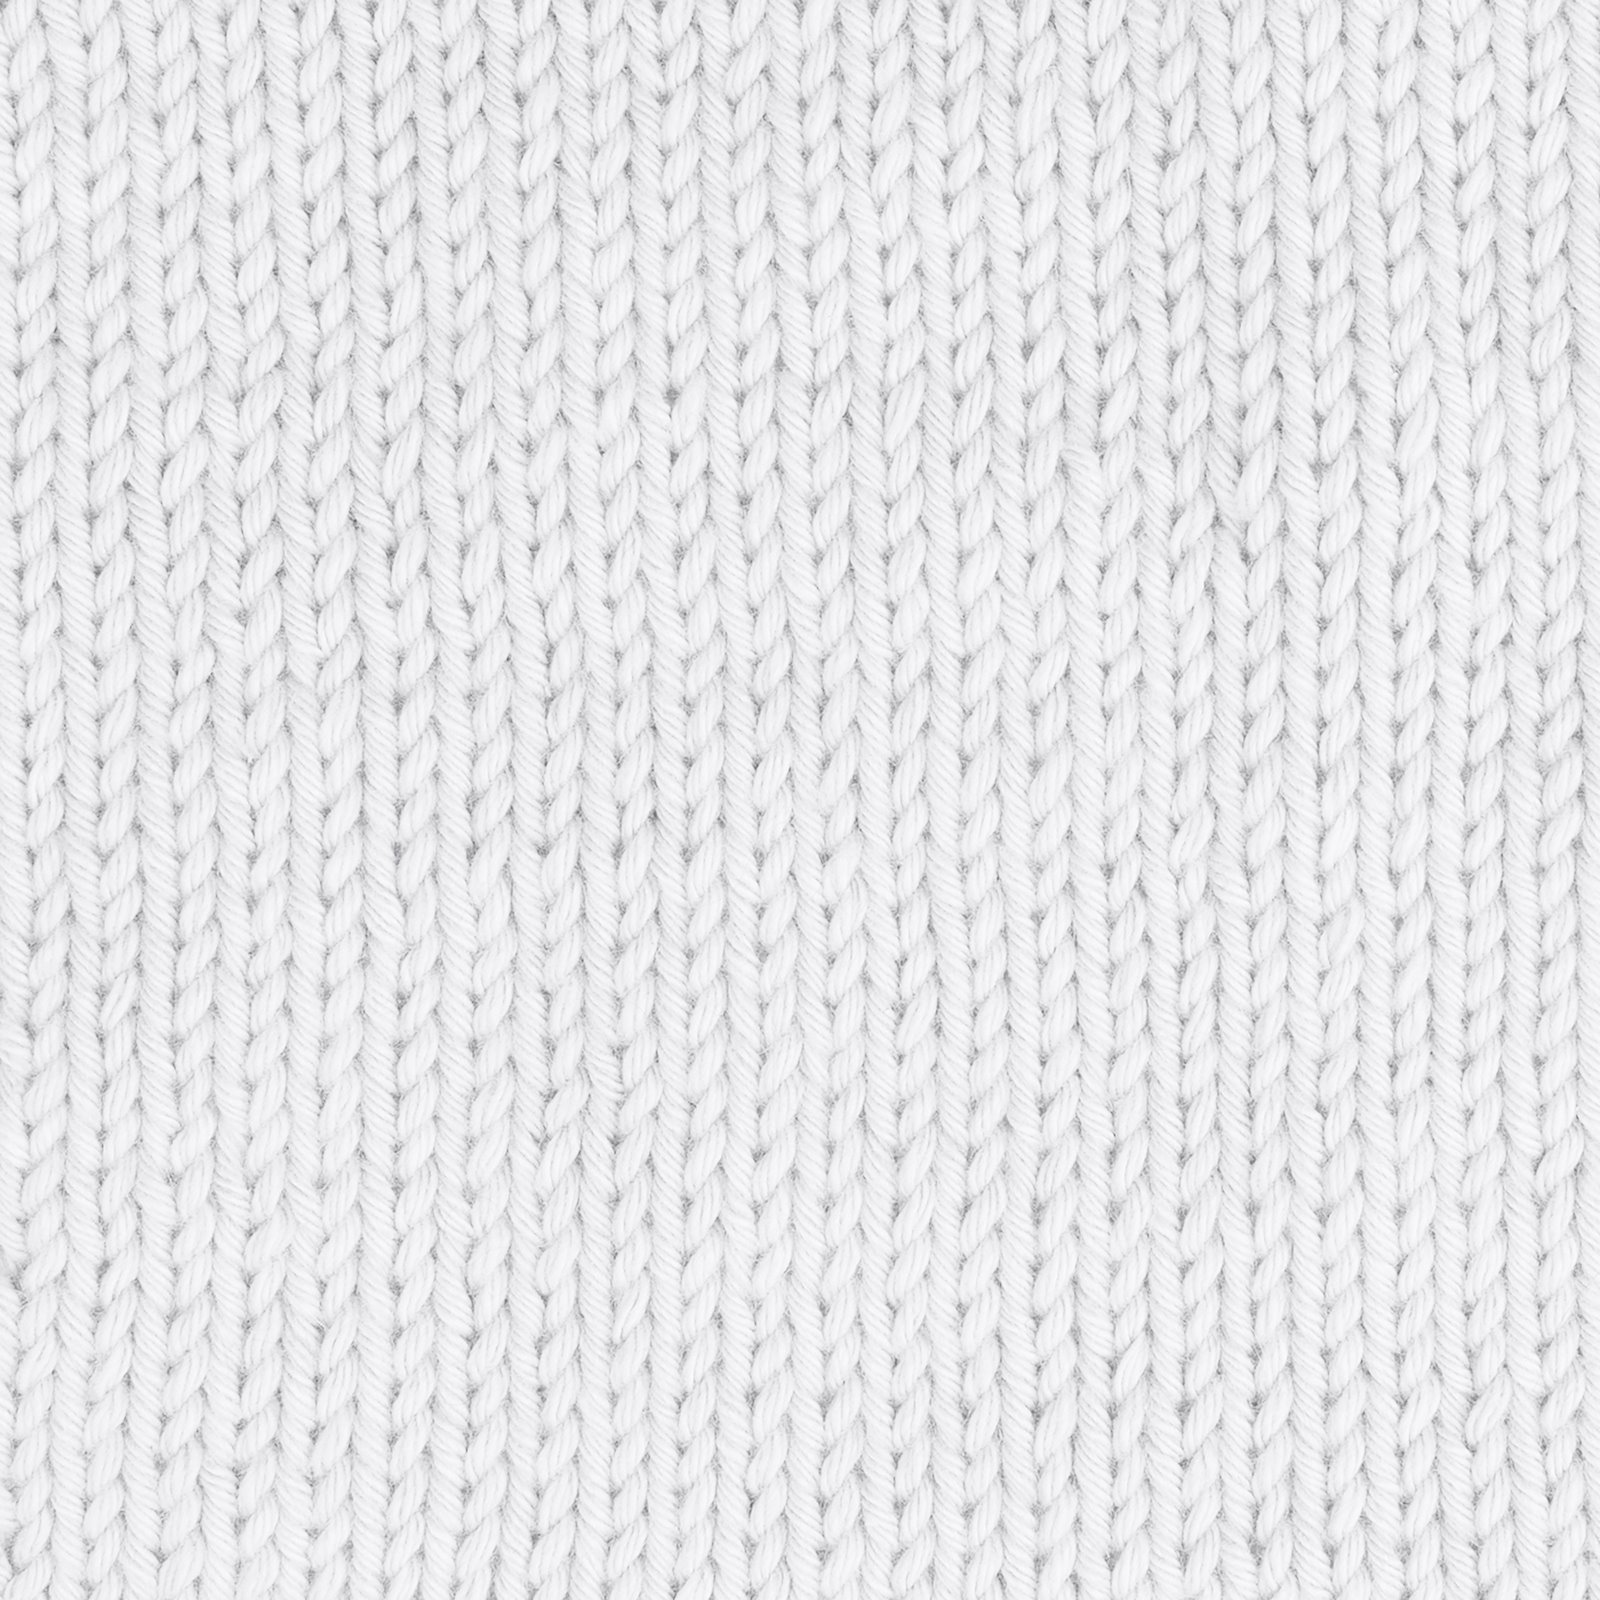 FRAYA, 100% cotton 8/8 yarn "Honest", white 90061001_sskit